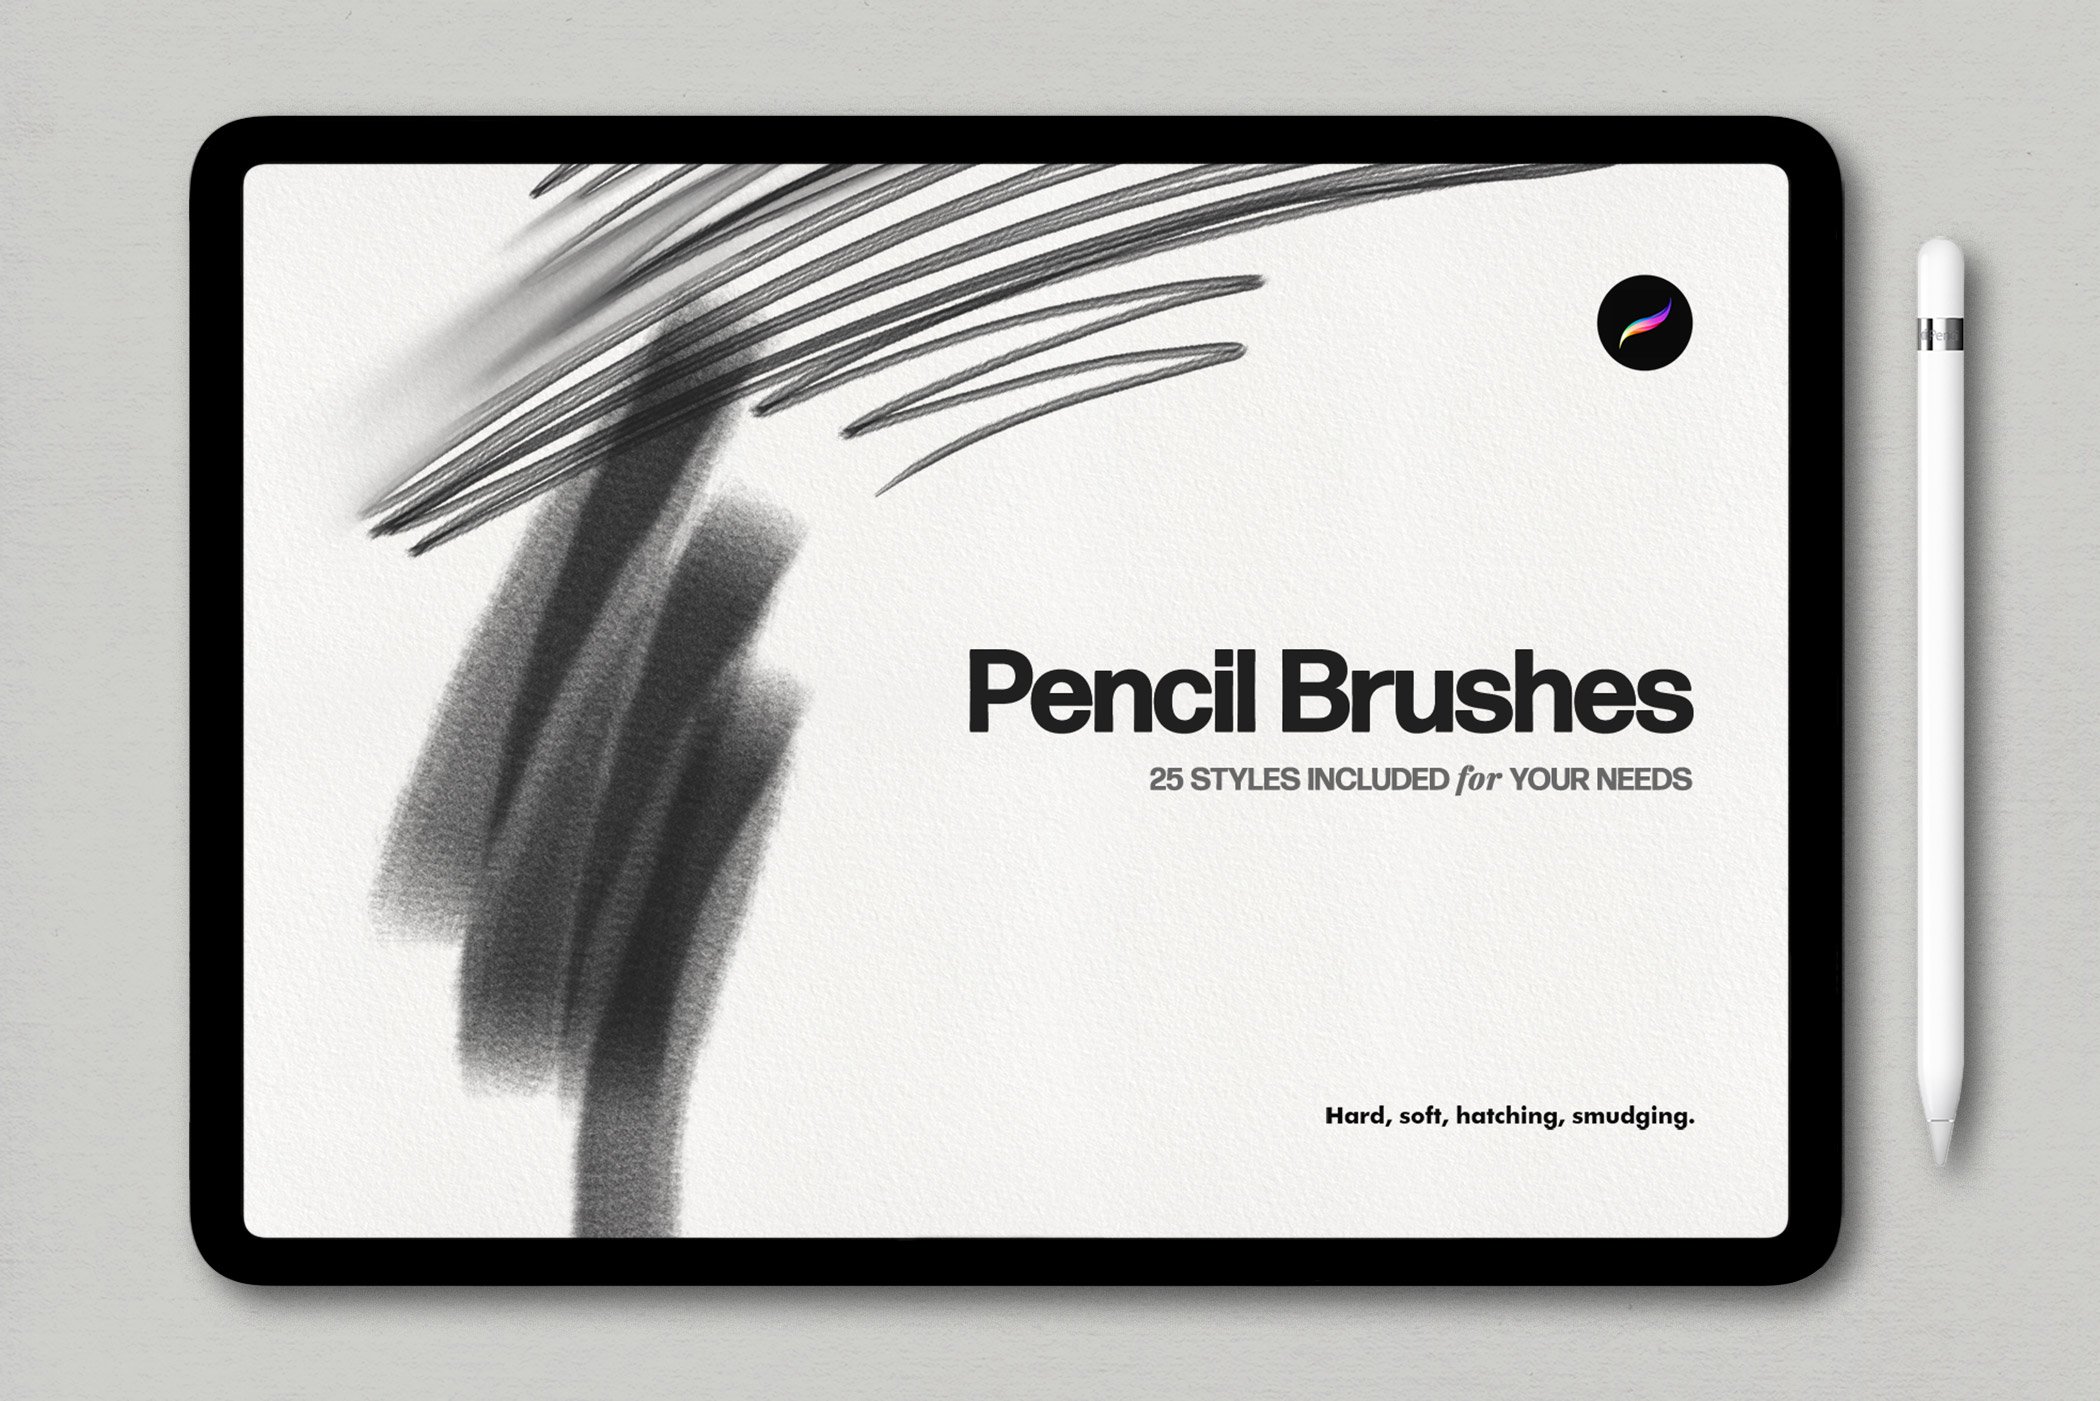 Basic Pencil Procreate Brushes cover image.